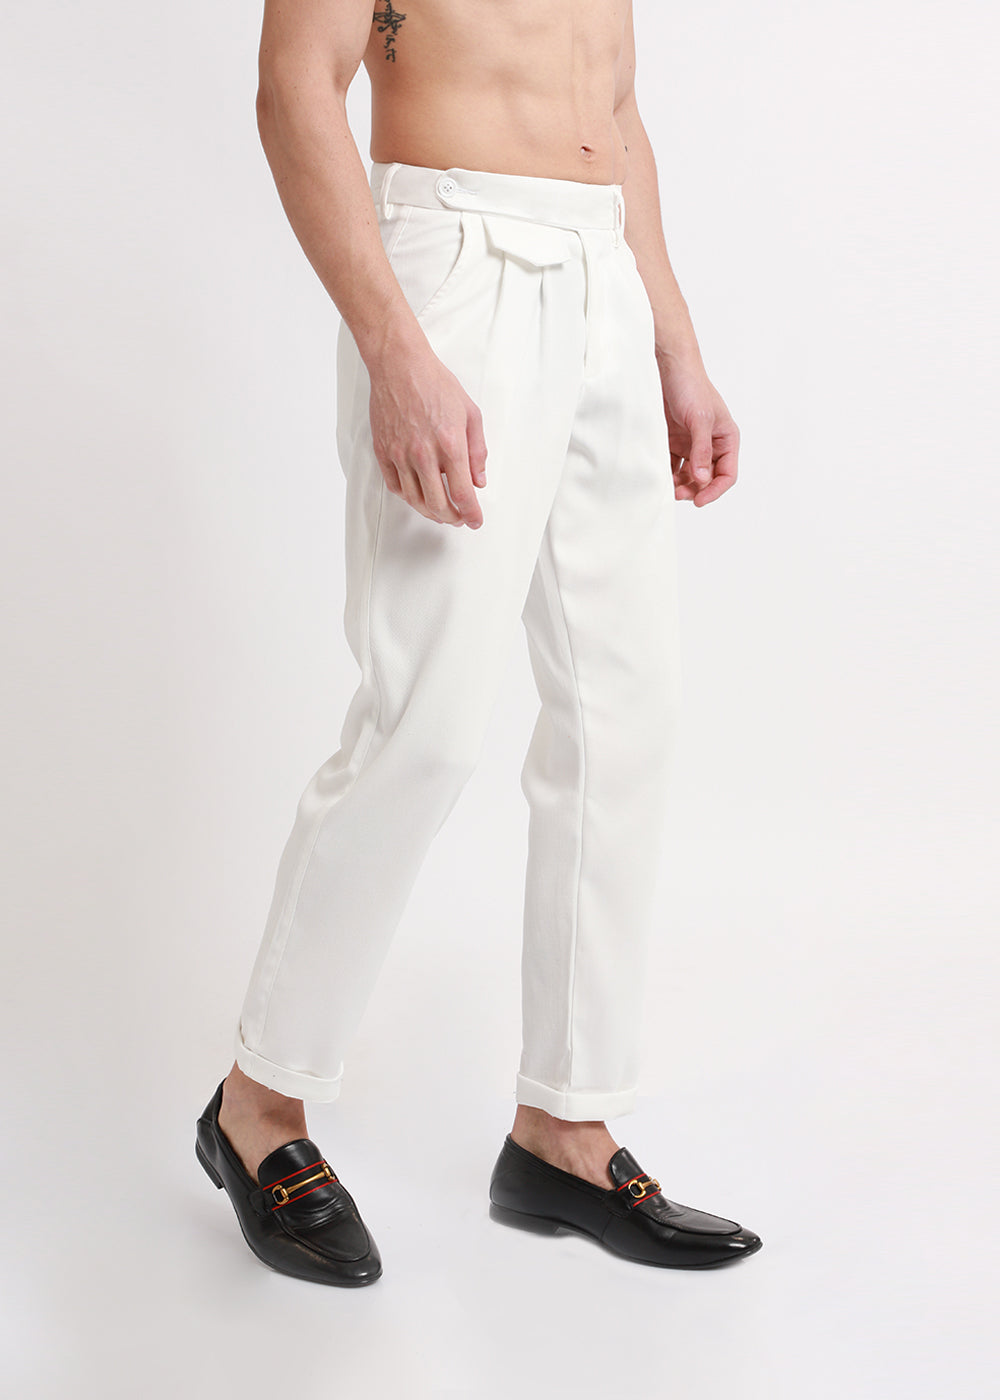 Ace White Korean Trouser